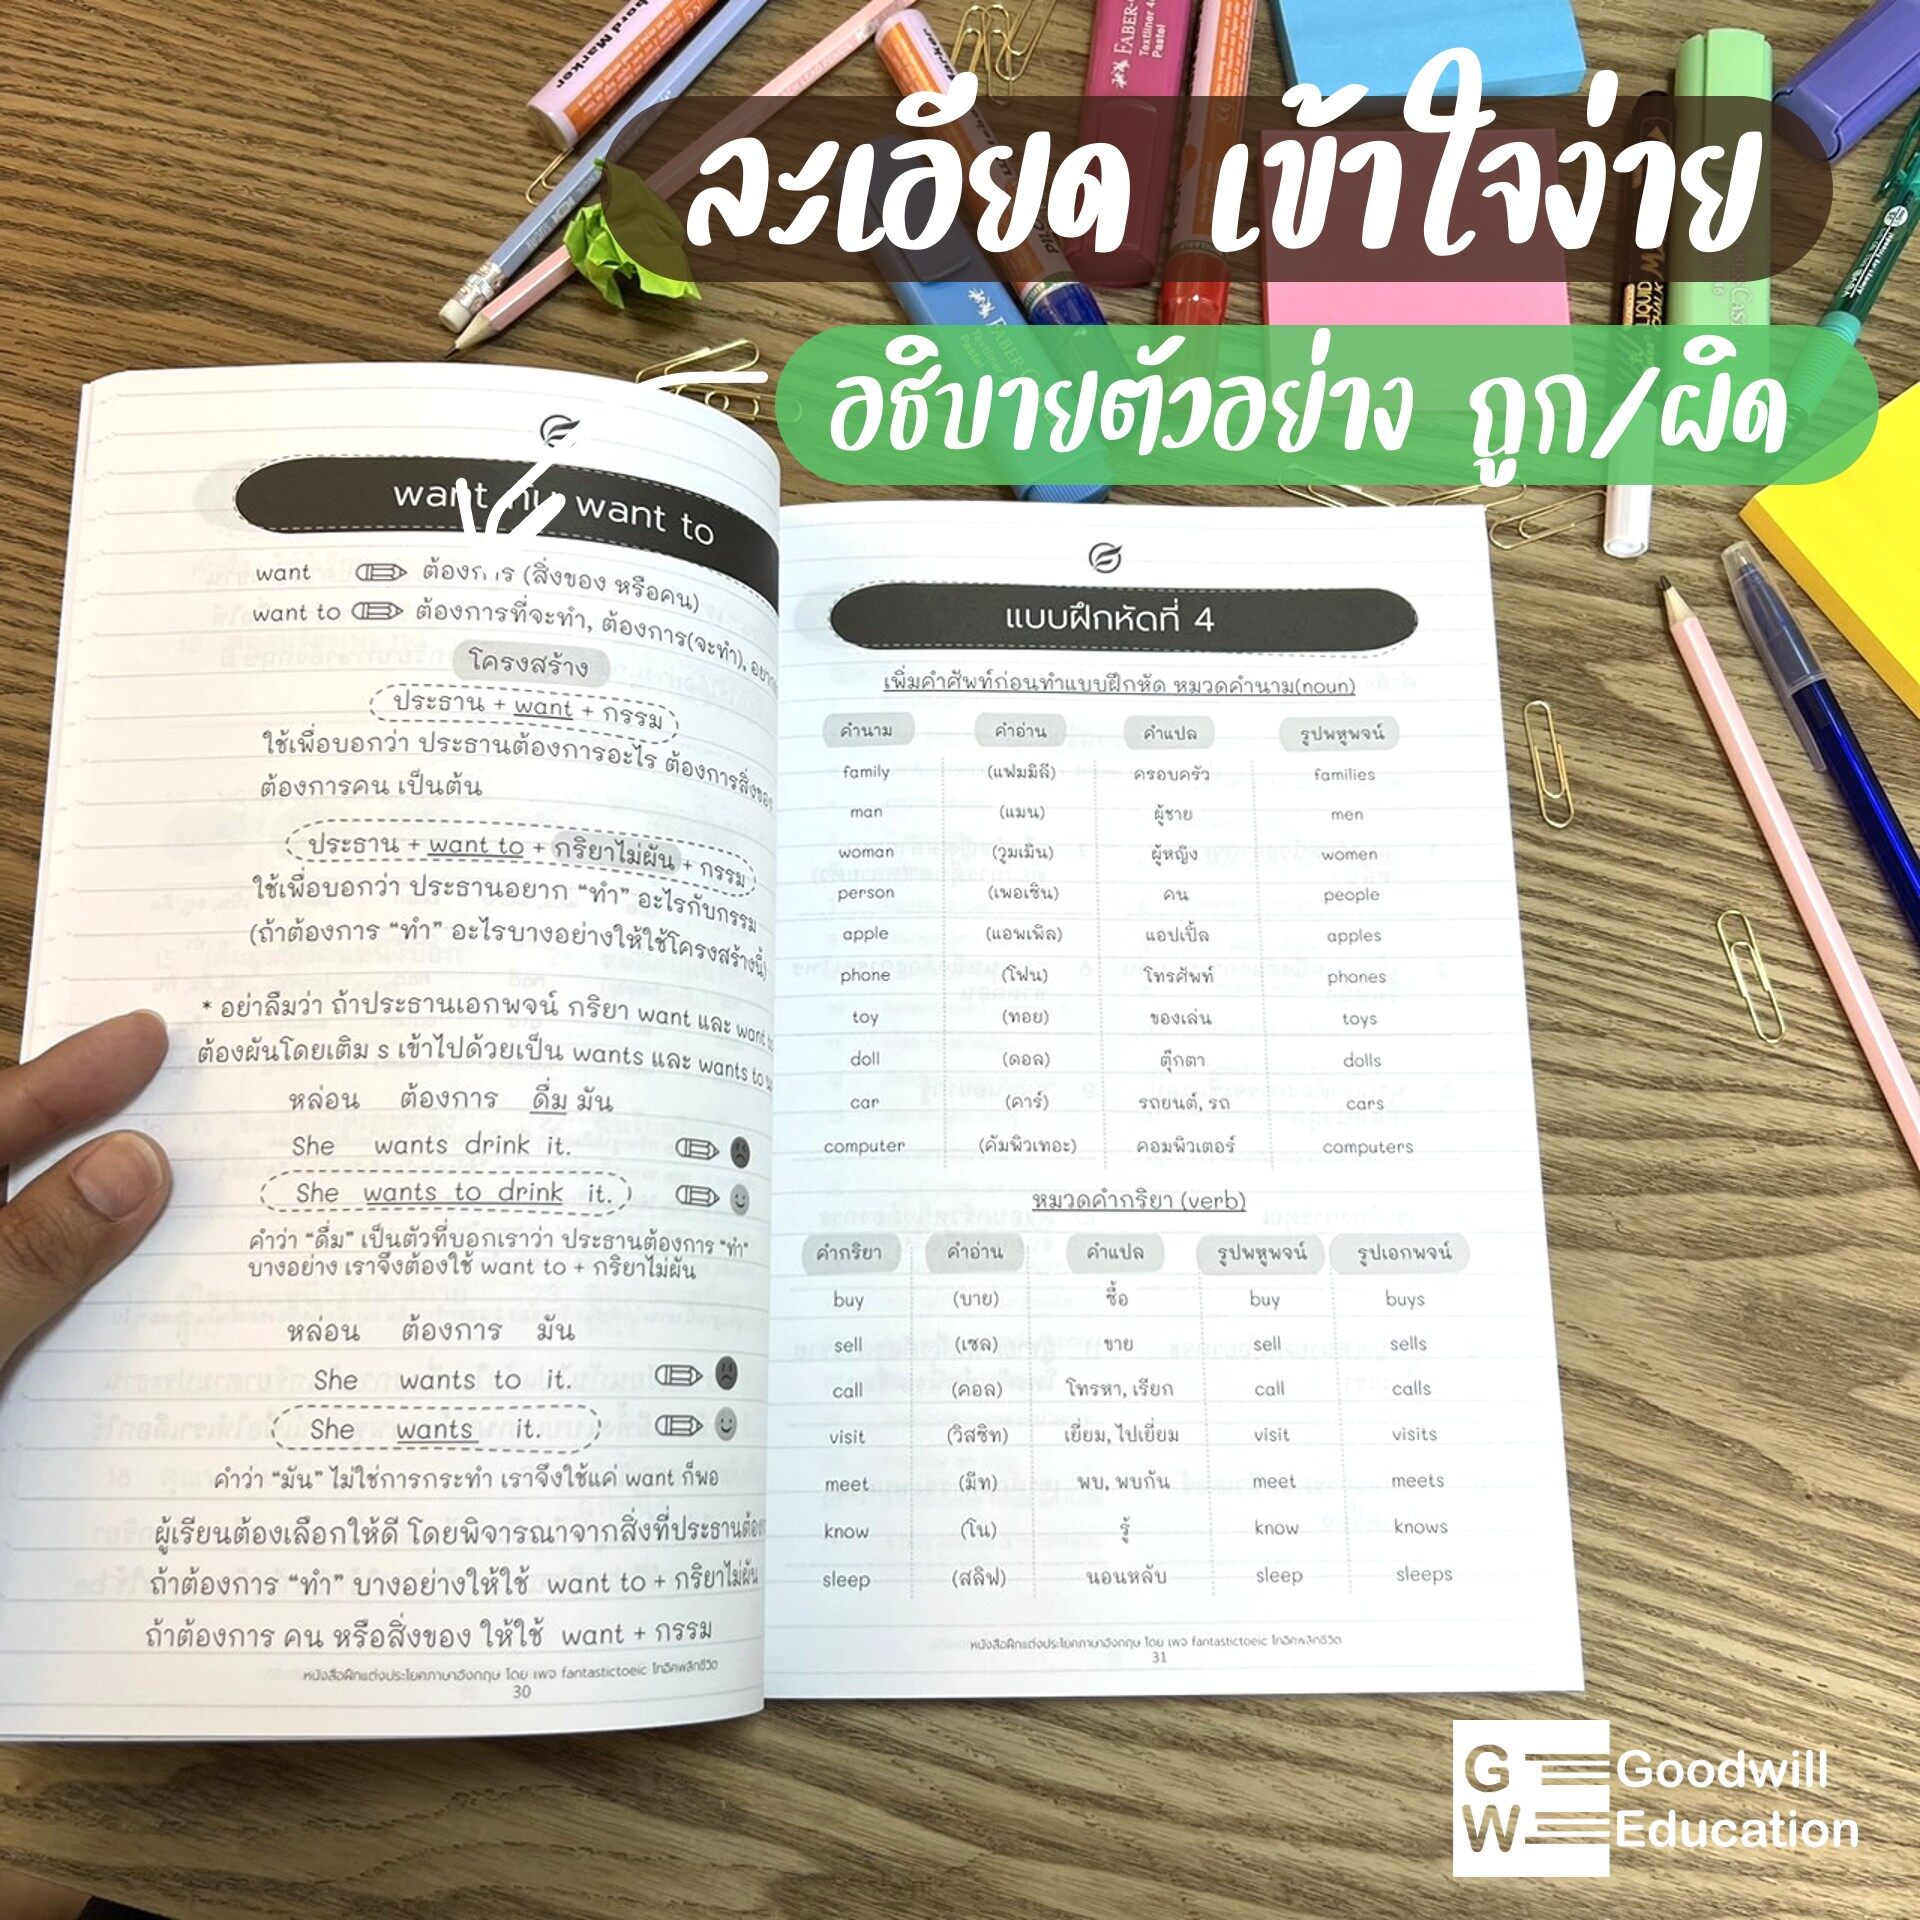 หนังสือฝึกแต่งประโยค ภาษาอังกฤษเบื้องต้น สำหรับคนไม่มีพื้นฐาน รู้ศัพท์น้อย  และต้องการเริ่มฝึกแต่งประโยค - กู๊ดวิล เอ็ดดูเคชั่น - Thaipick